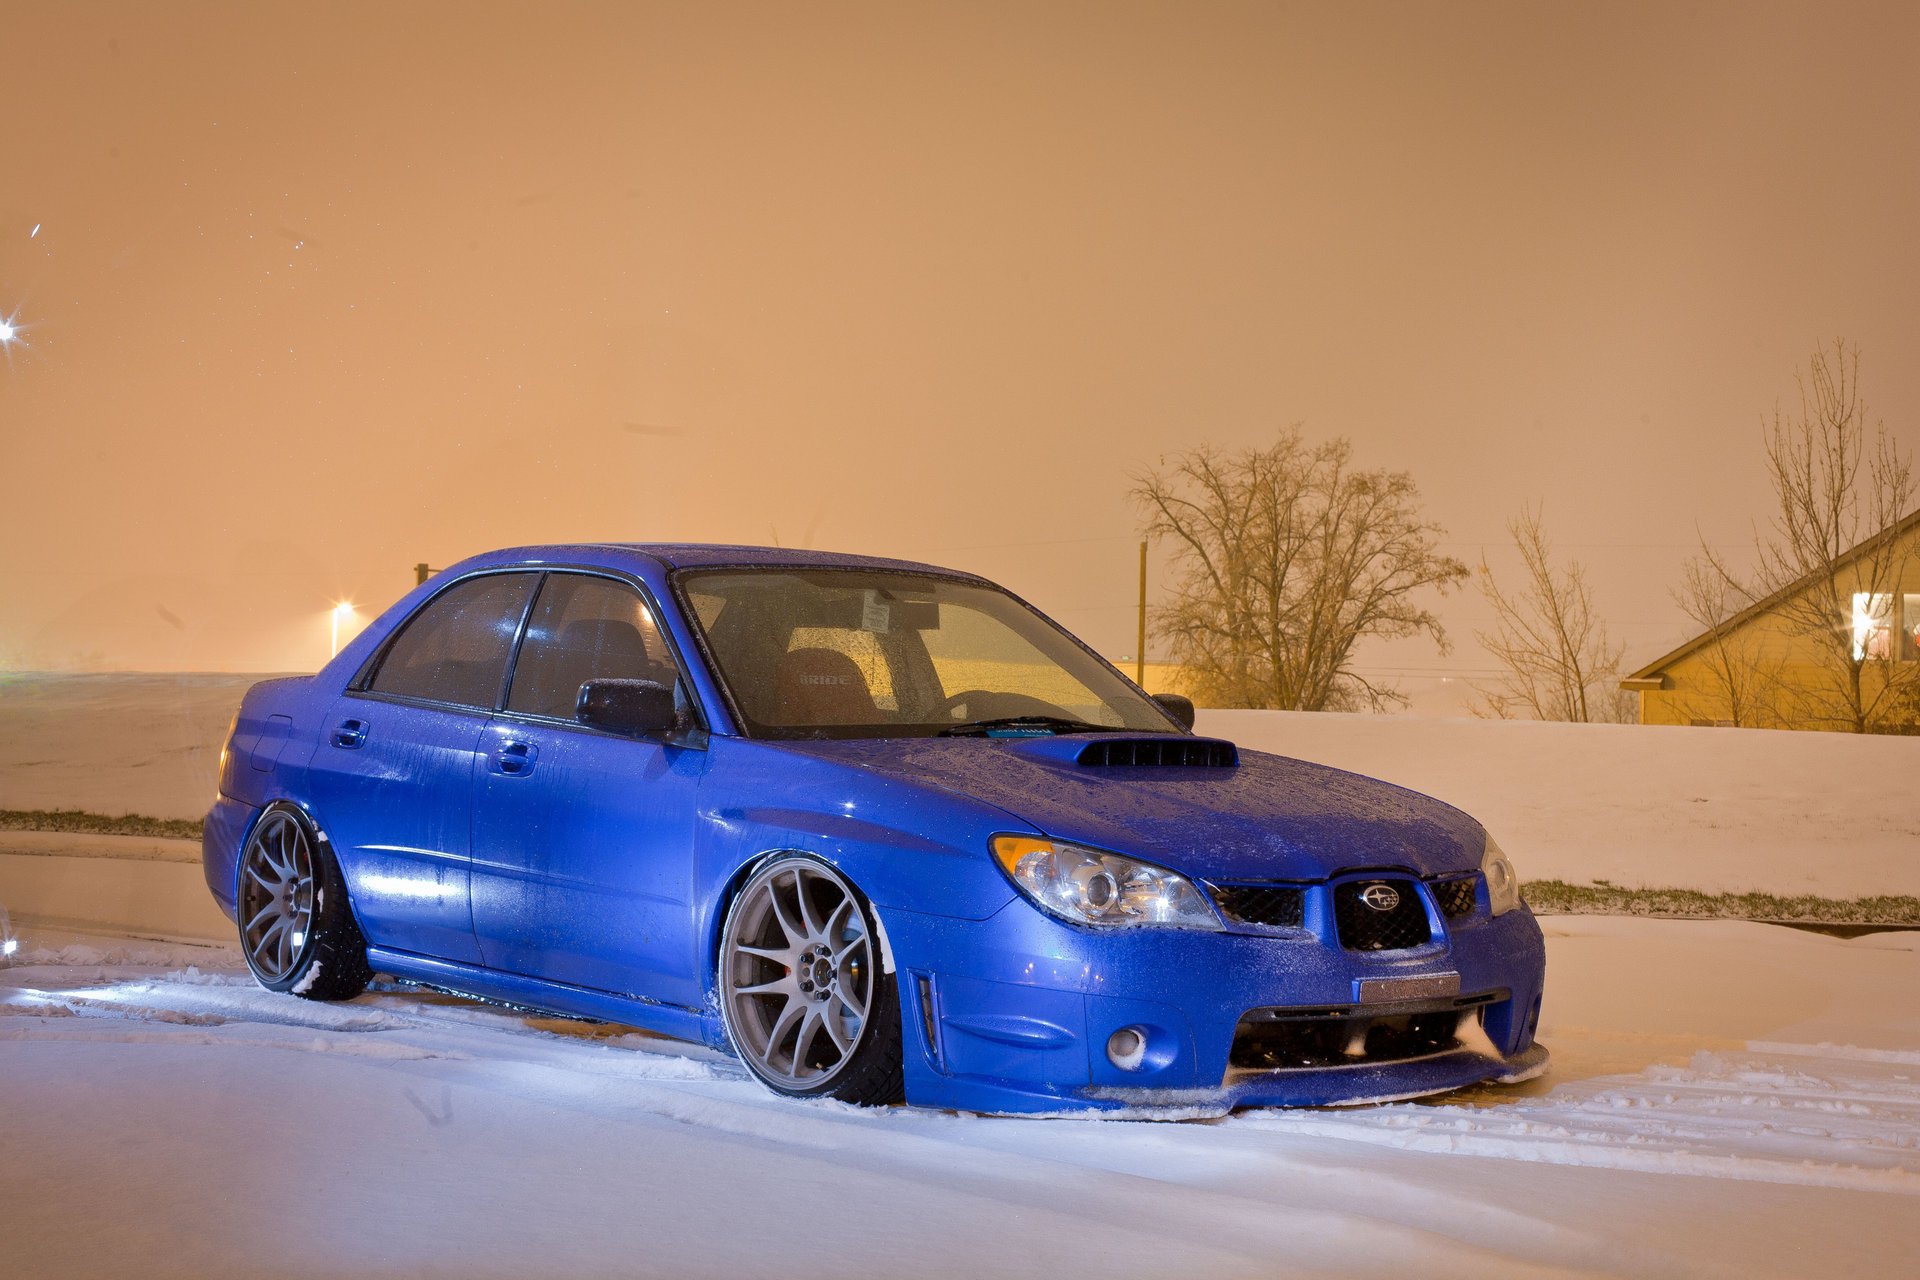 WRX sti car in winter in the snow